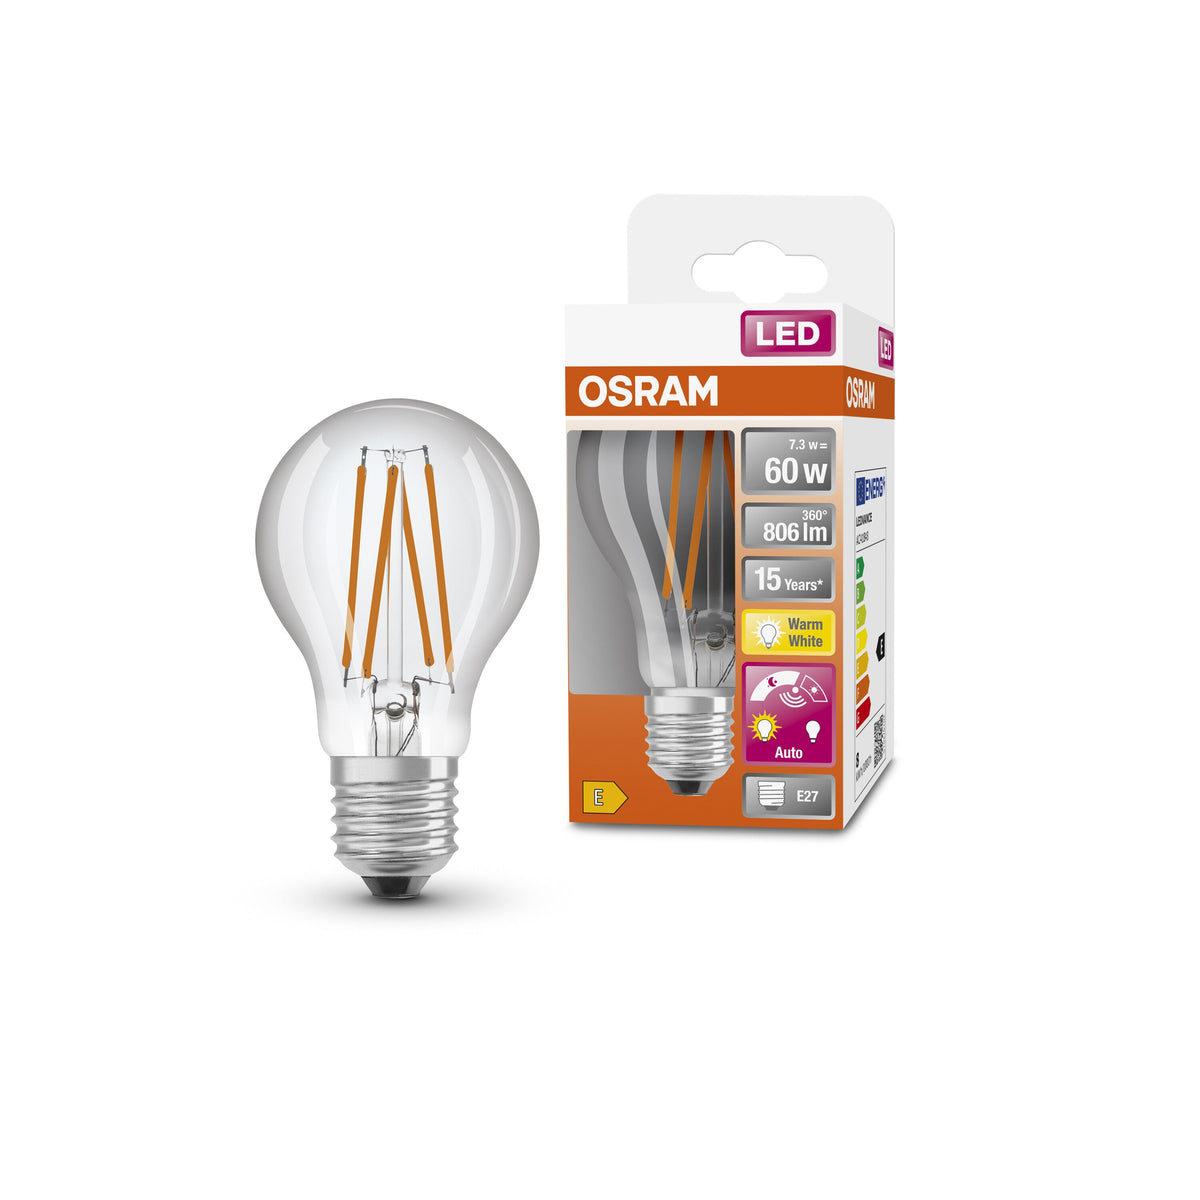 Lampada LED OSRAM Star+ con sensore di luce diurna per attacco E27, aspetto filamento, bianco caldo (2700K), 806 lumen, ricambio per lampadine convenzionali da 60 W, non dimmerabile, confezione da 1